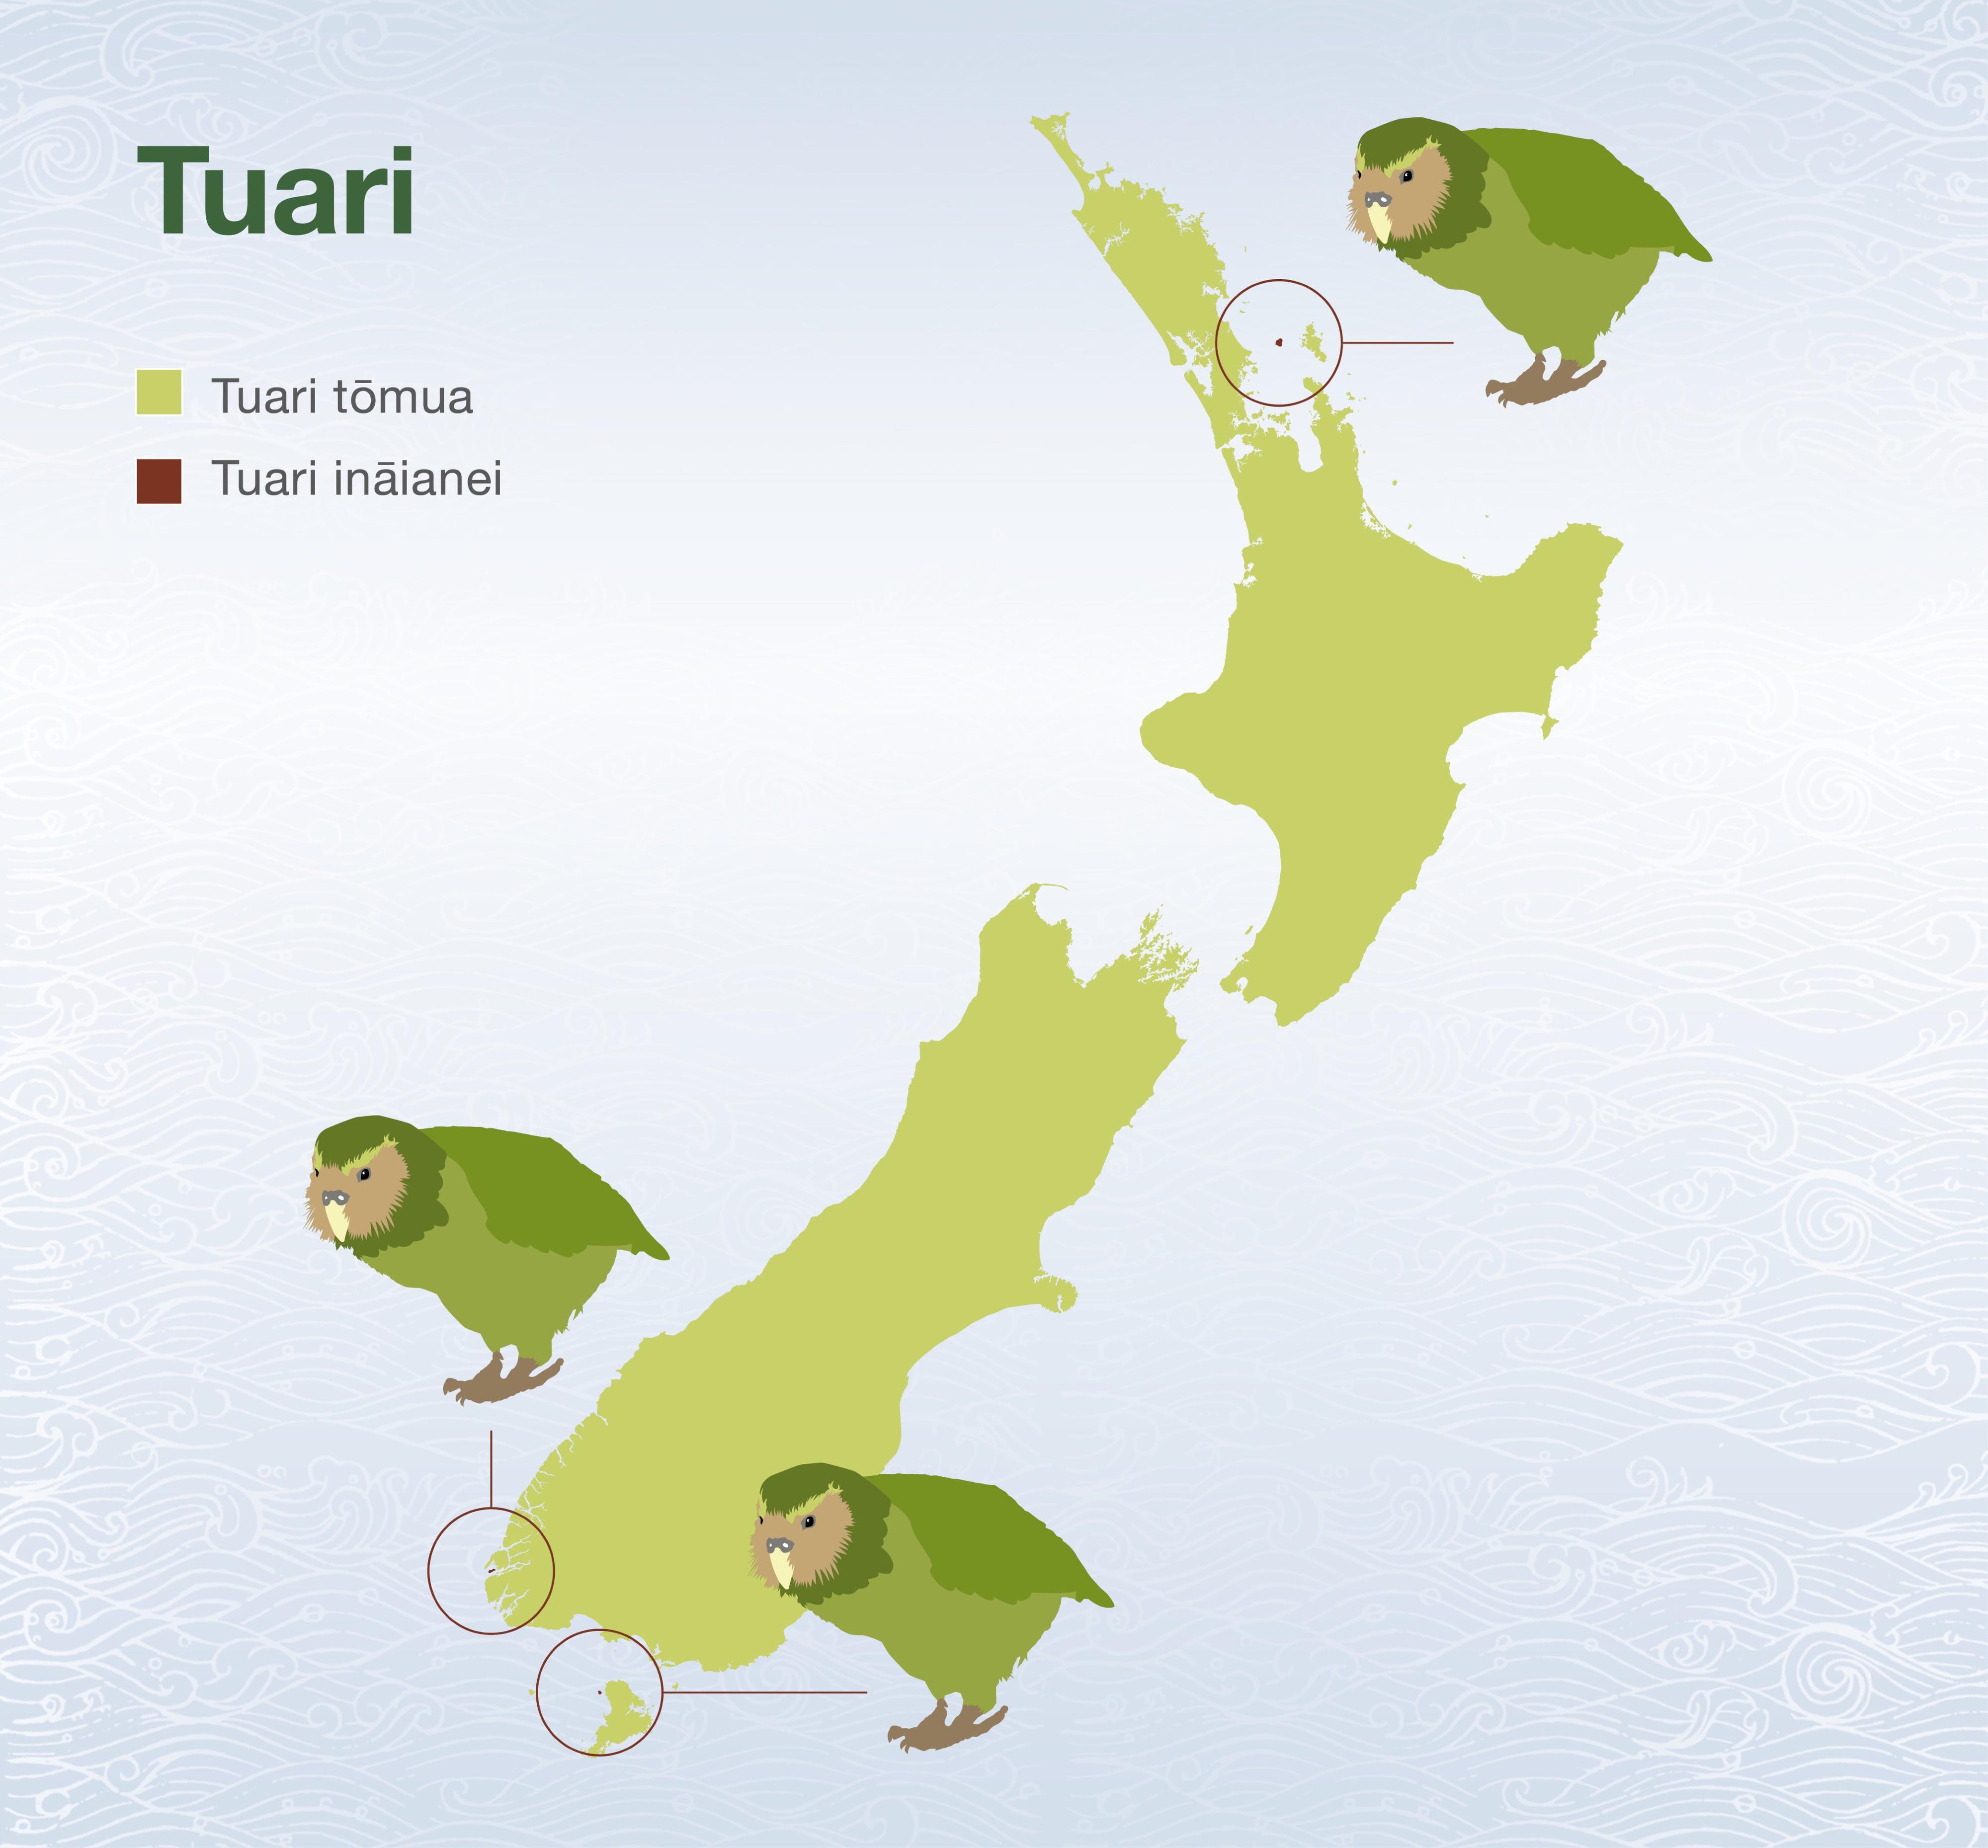 Répartition (tuari) du kakapo: en vert clair, là où il était à l'origine; en bordeaux, les trois îles où il se trouve de nos jours. [DOC, NZ]